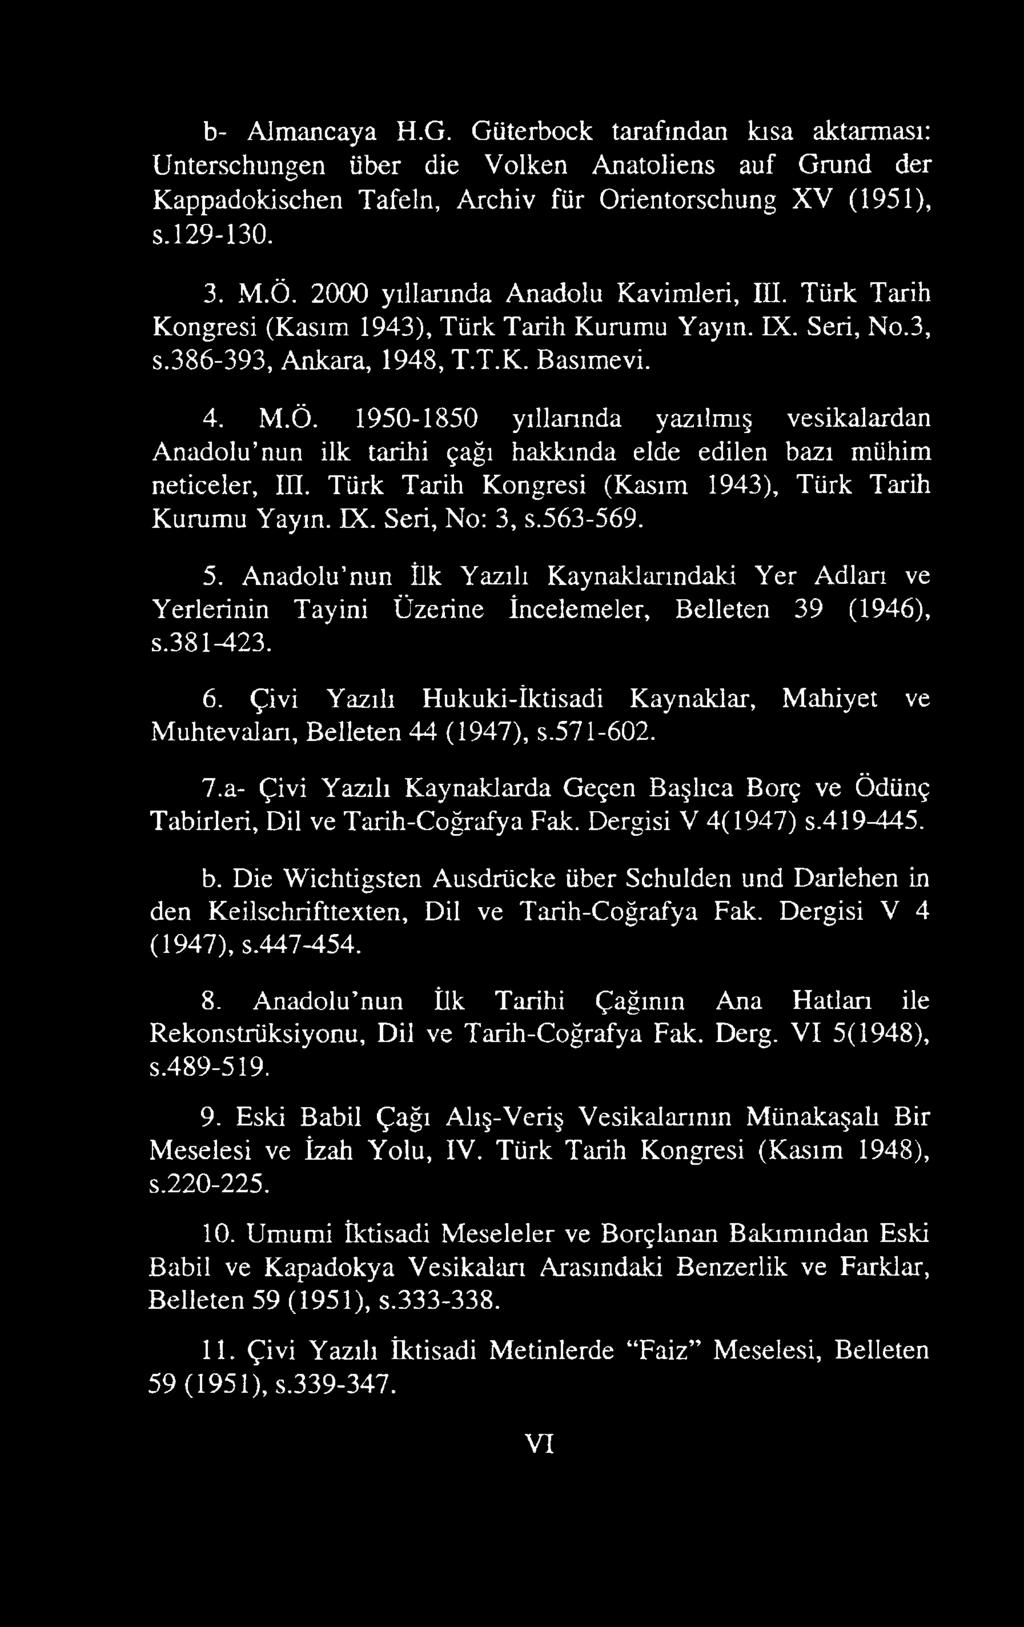 1950-1850 yıllarında yazılmış vesikalardan Anadolu nun ilk tarihi çağı hakkında elde edilen bazı mühim neticeler, III. Türk Tarih Kongresi (Kasım 1943), Türk Tarih Kurumu Yaym. IX. Seri, No: 3, s.